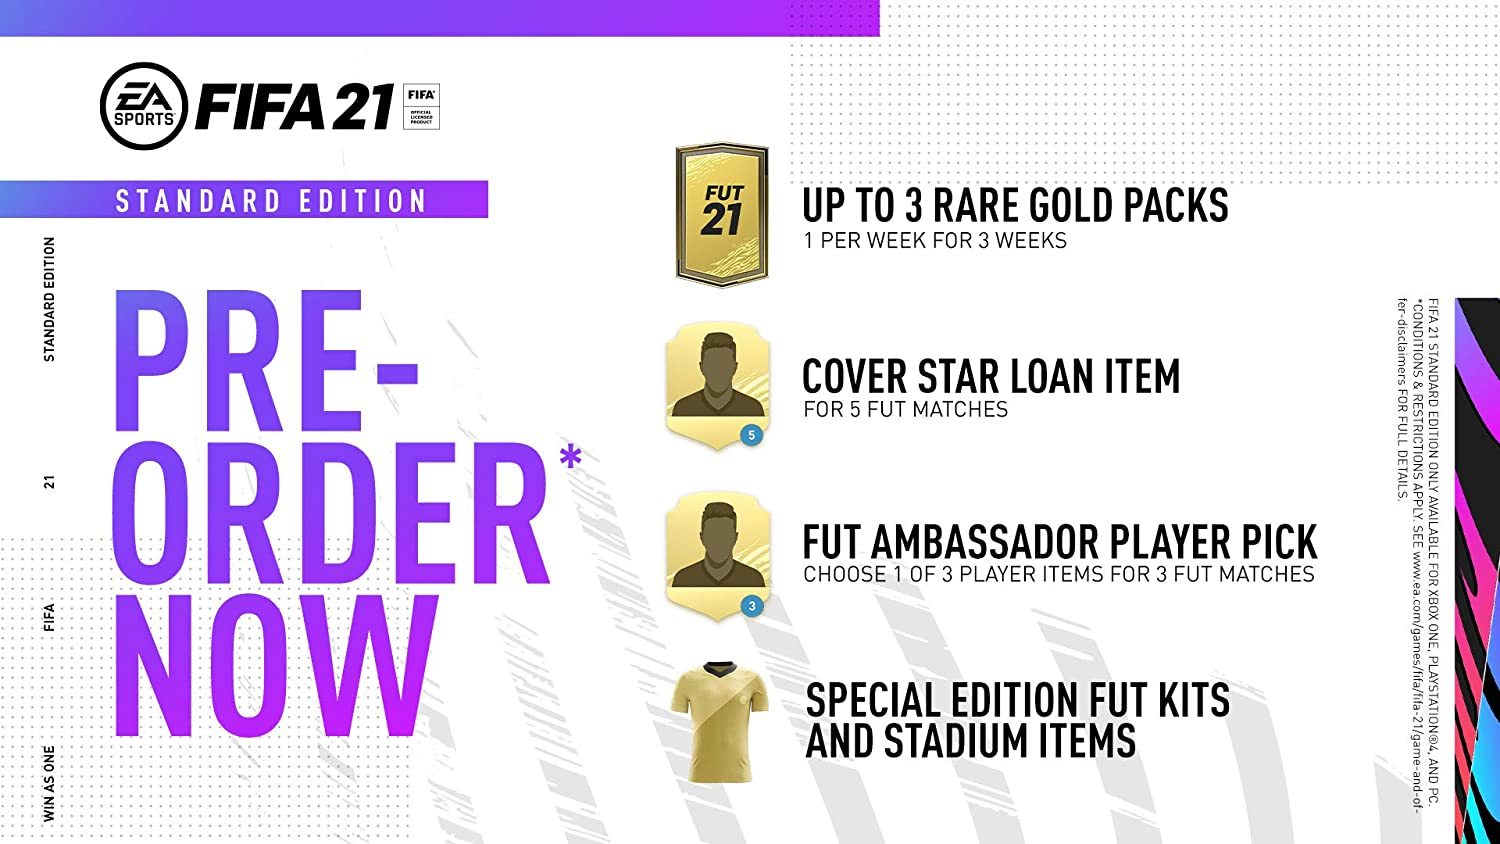 Buy FIFA 23 - Pre-order Bonus Origin PC Key 